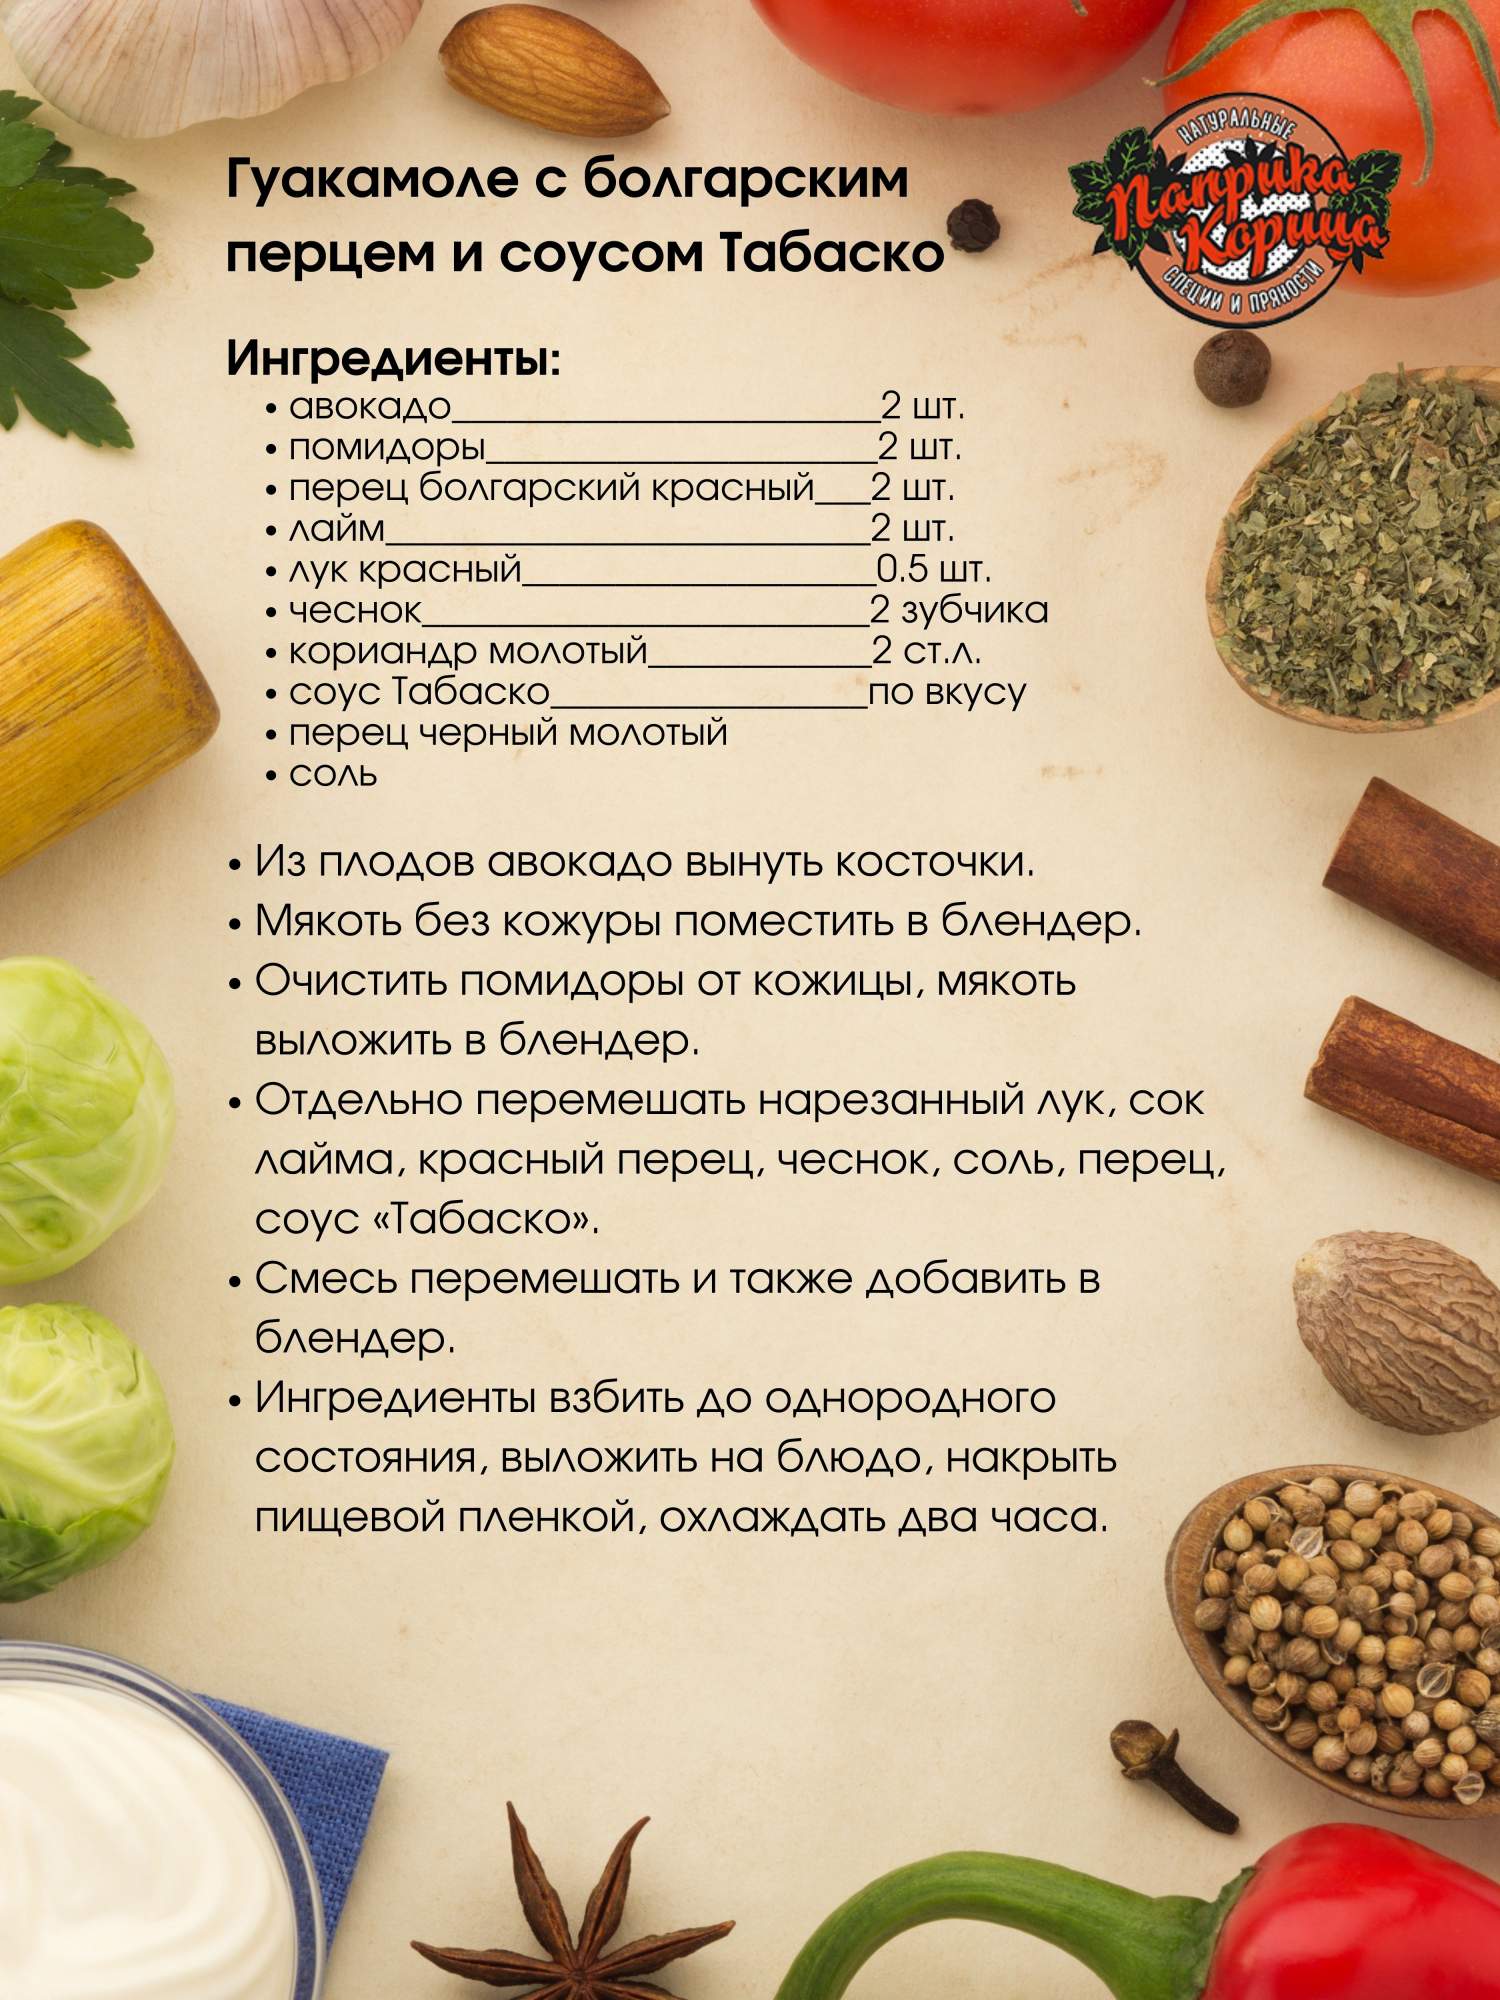 Купить перец Табаско 50гр. стручок цельный в стеклянной банке, цены вМоскве на Мегамаркет